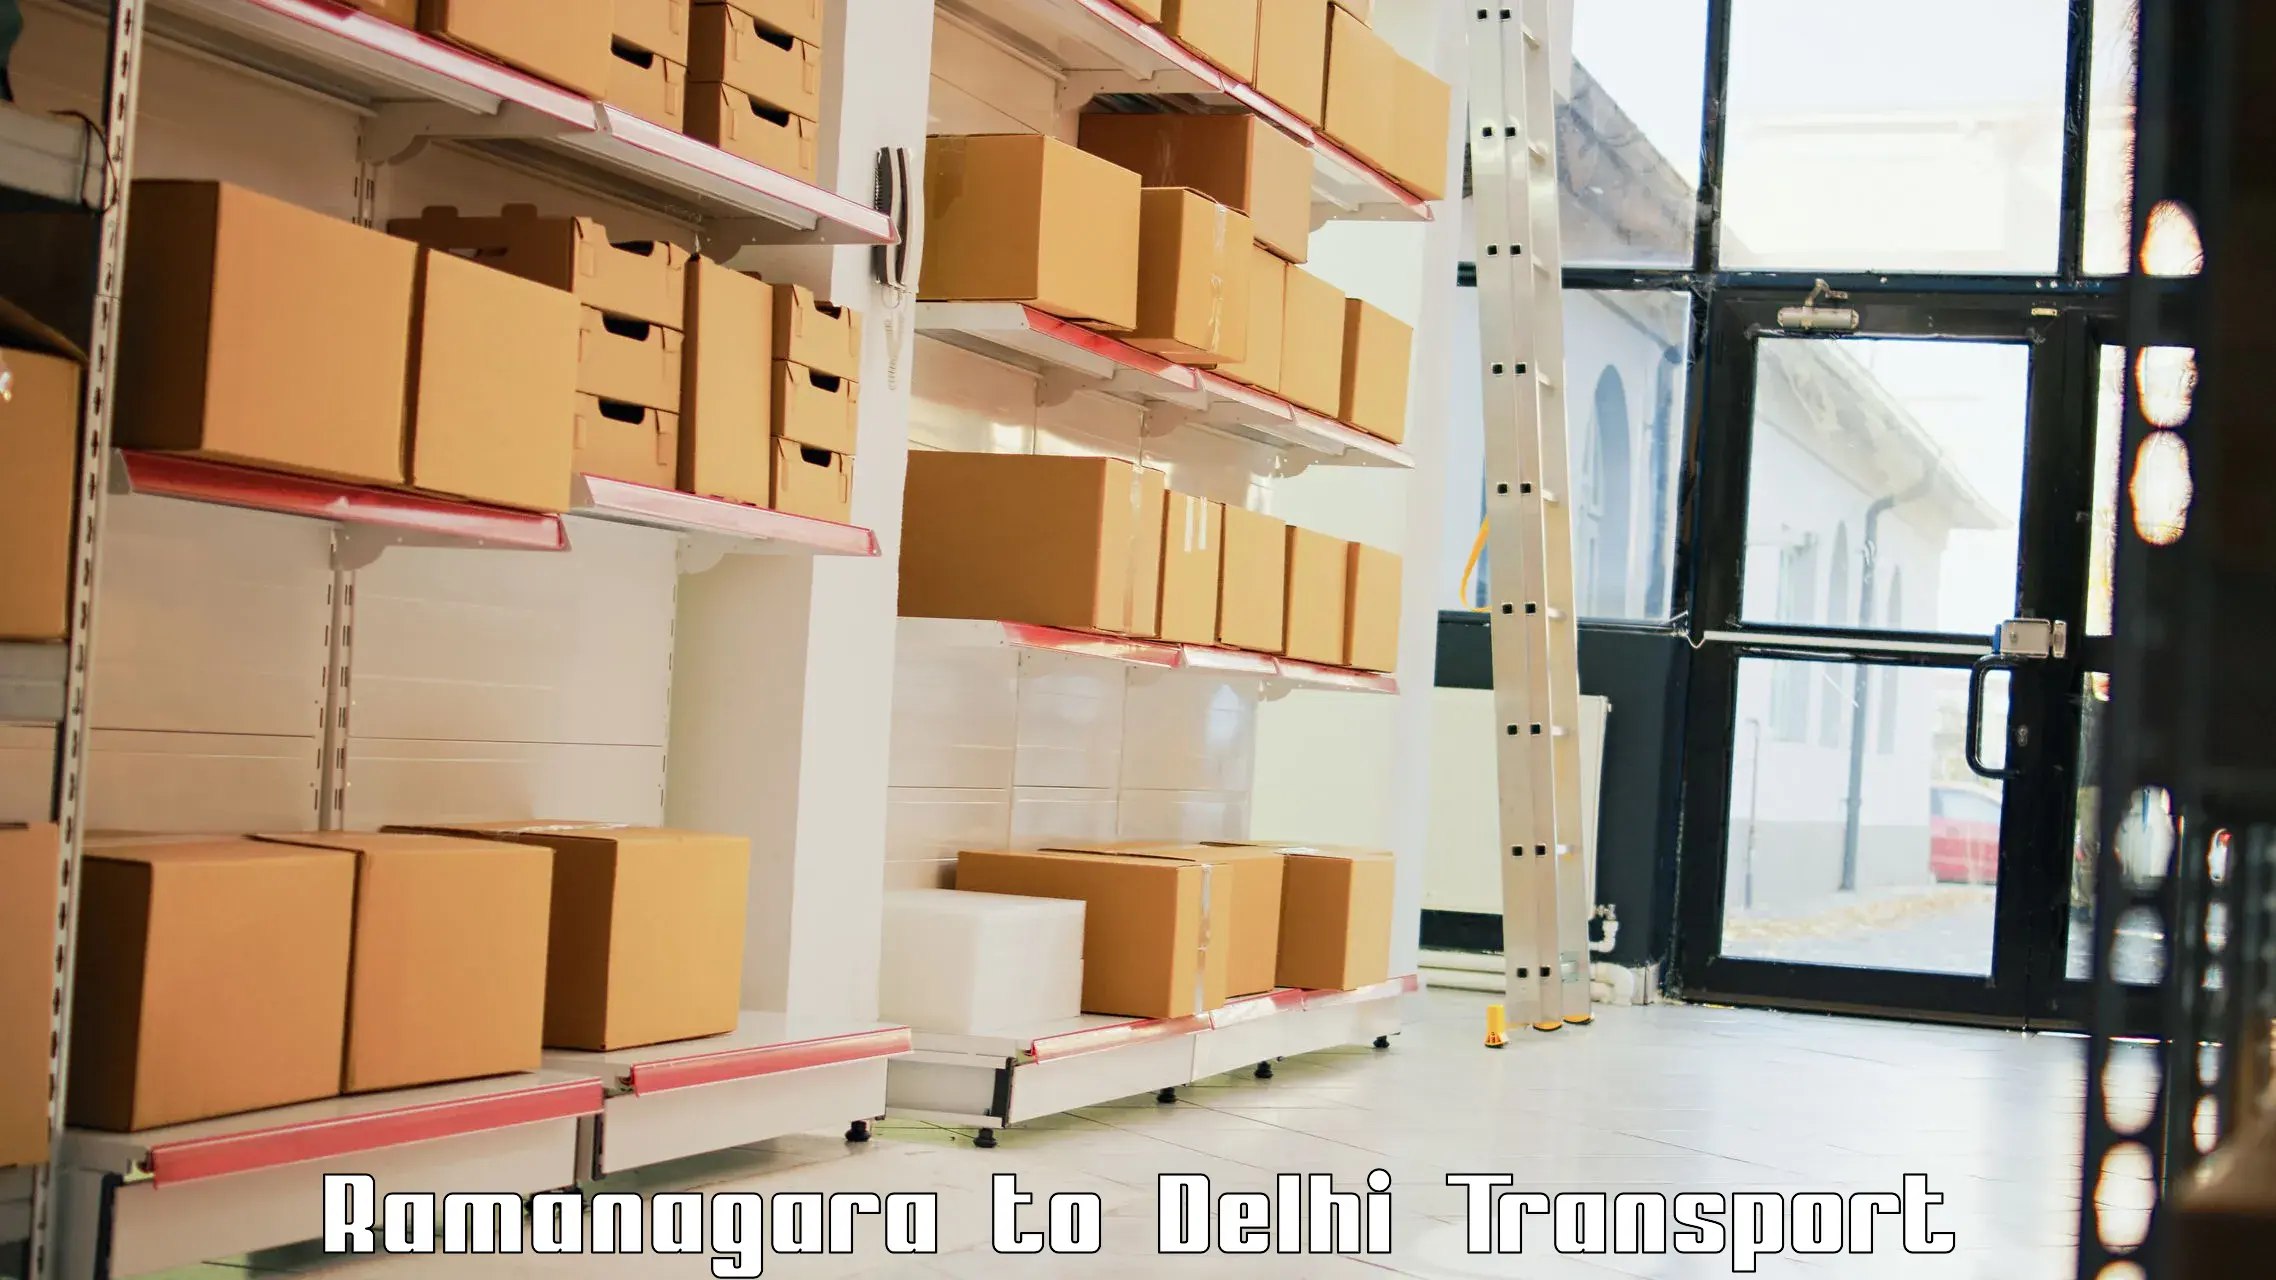 Delivery service Ramanagara to IIT Delhi